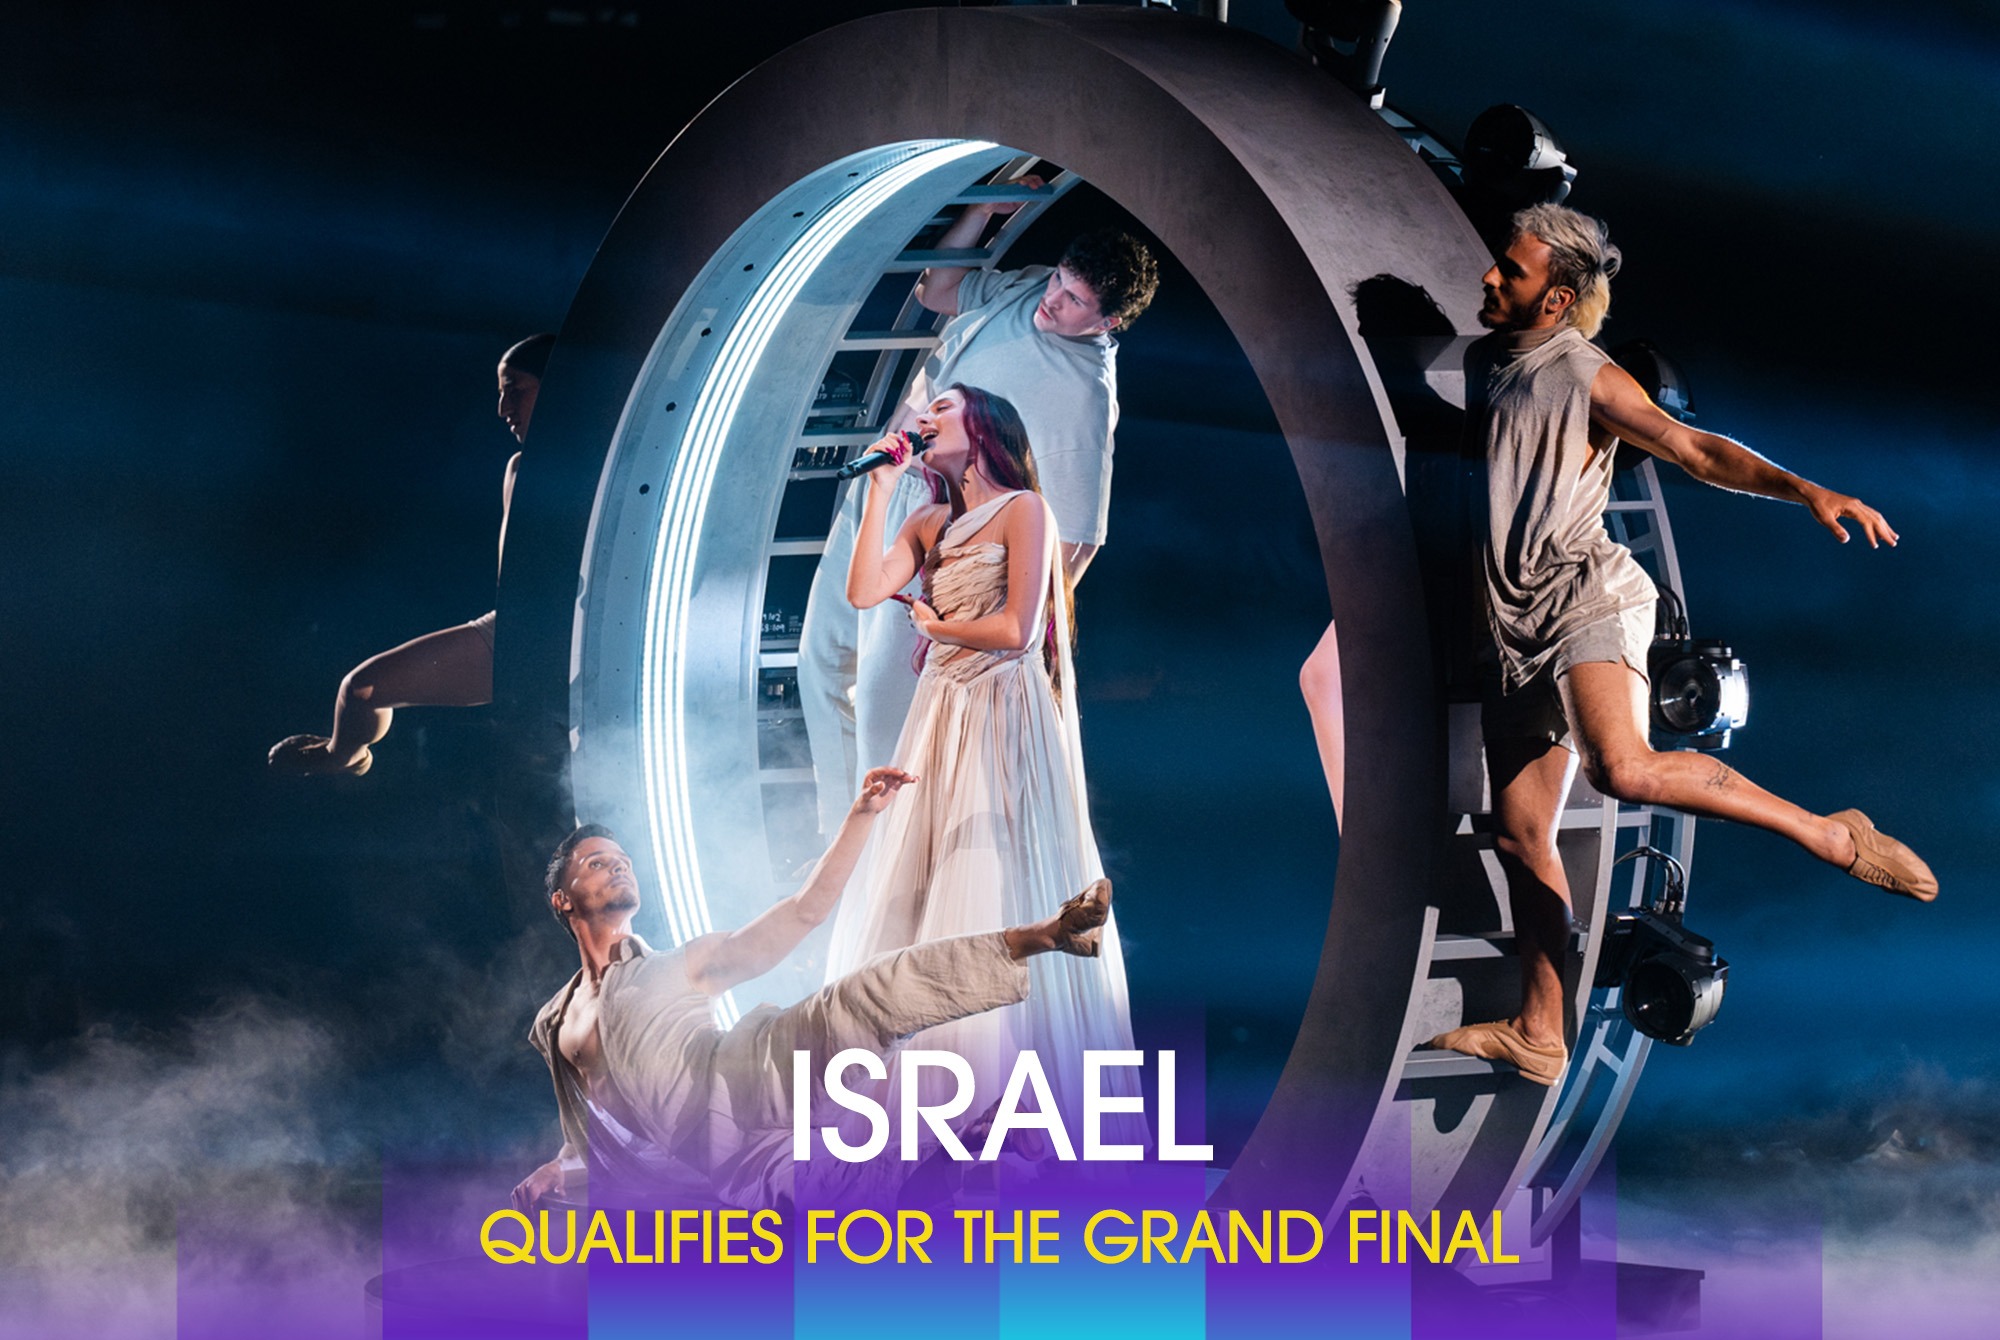 以色列歌手戈蘭演唱的參賽作品《颶風》，經電視觀眾投票後成功晉級11日的決賽。圖/取自Eurovision Song Contest 臉書